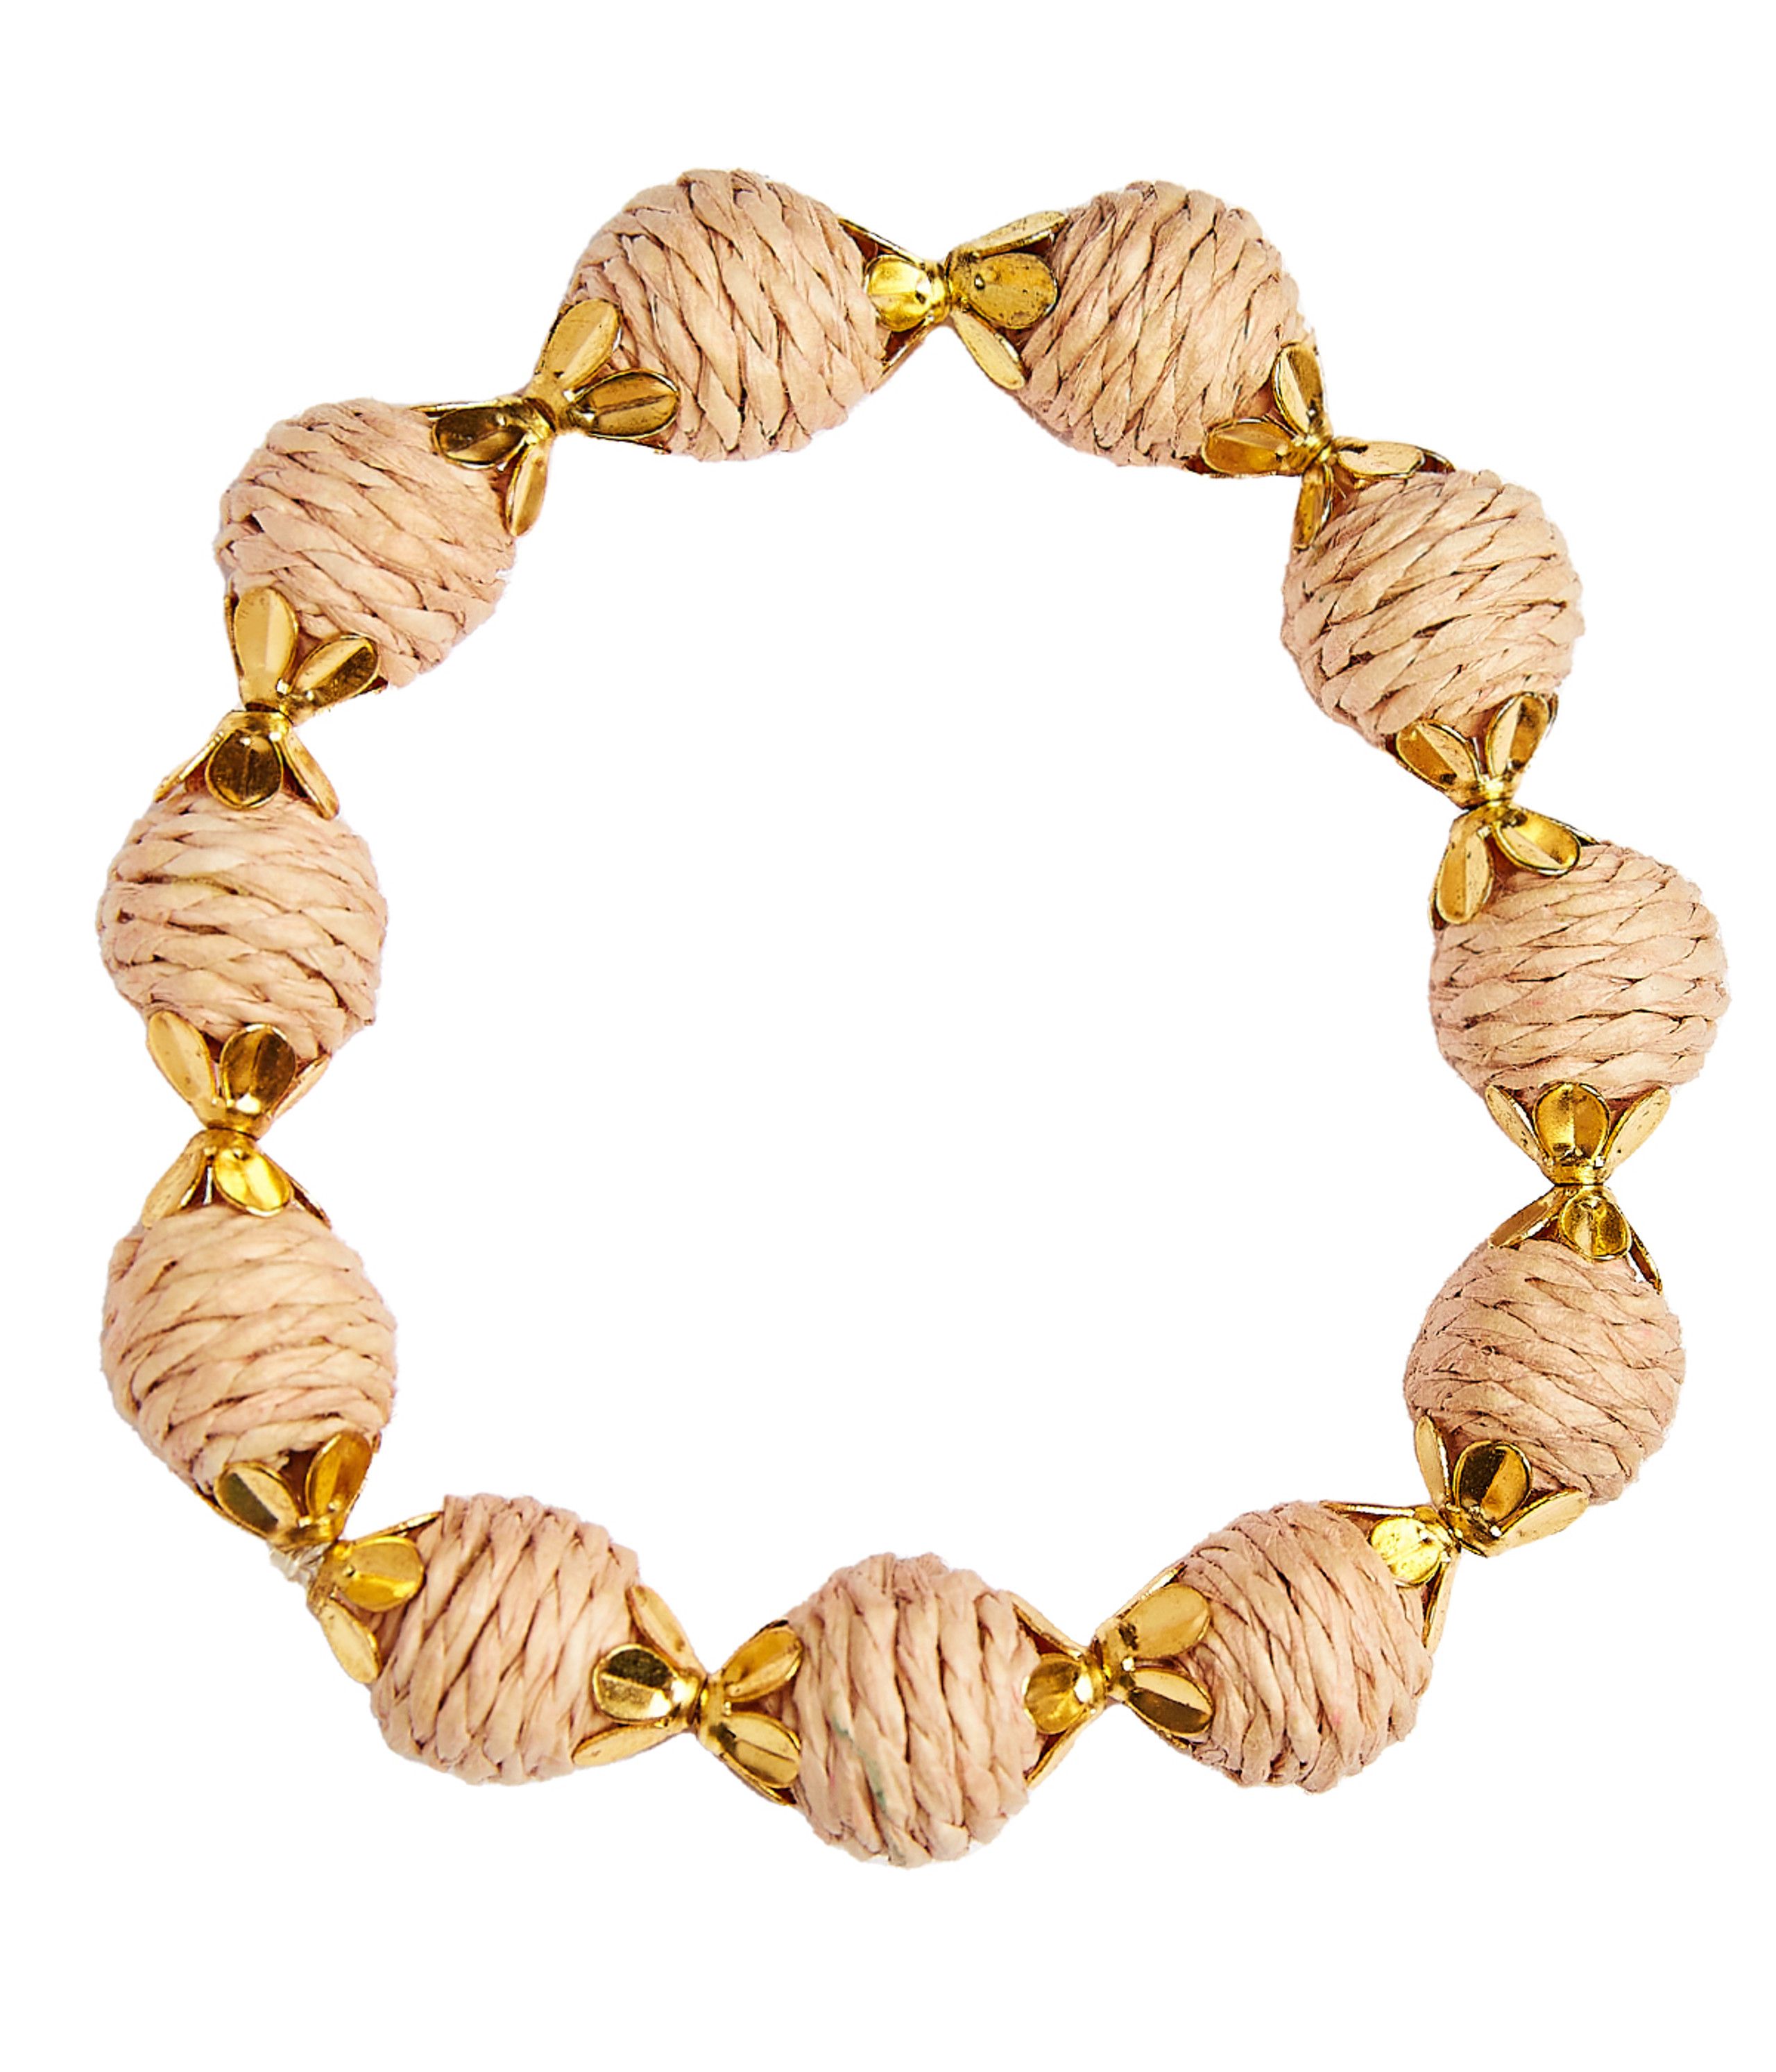 Kiki - Rattan Beaded Bracelet | Lisi Lerch Inc